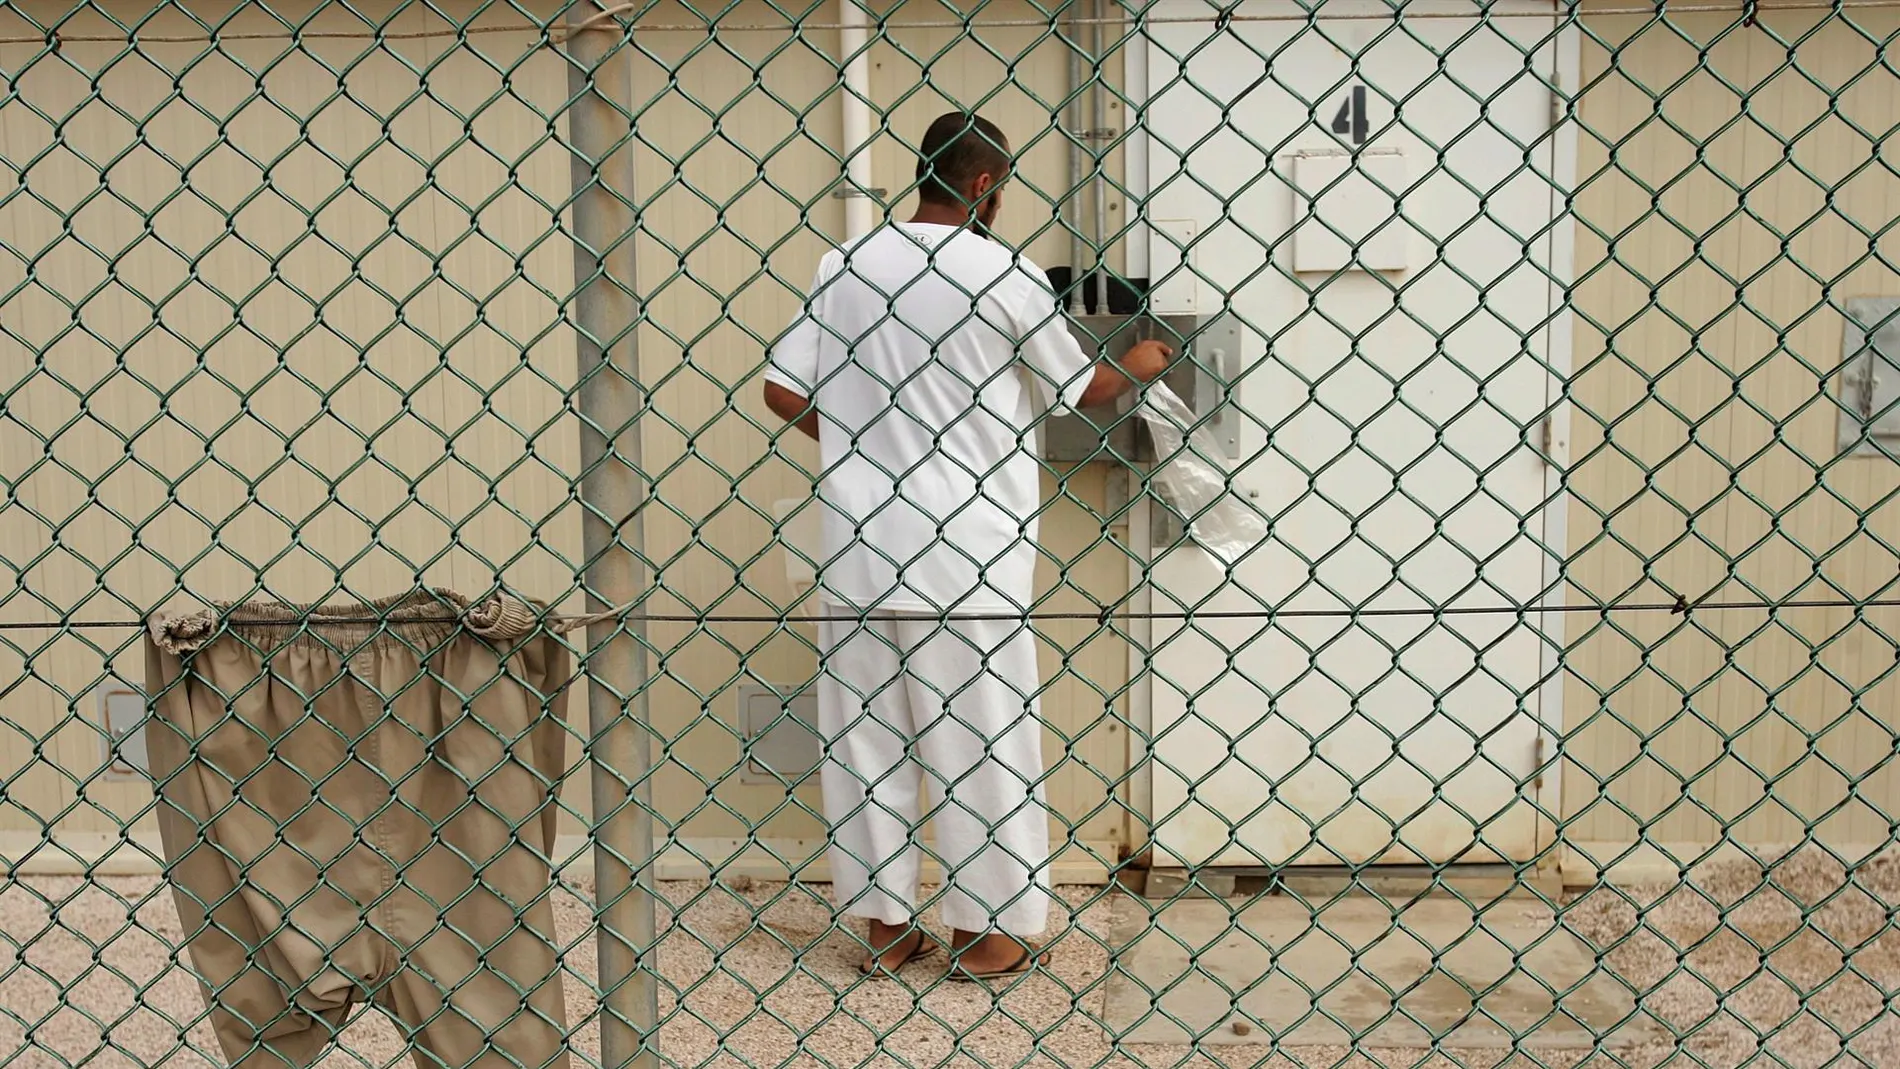 Foto de archivo, distribuida por el departamento de Defensa estadounidense, de un preso en el campamento Delta 4 de la base de Guantánamo en Cuba.